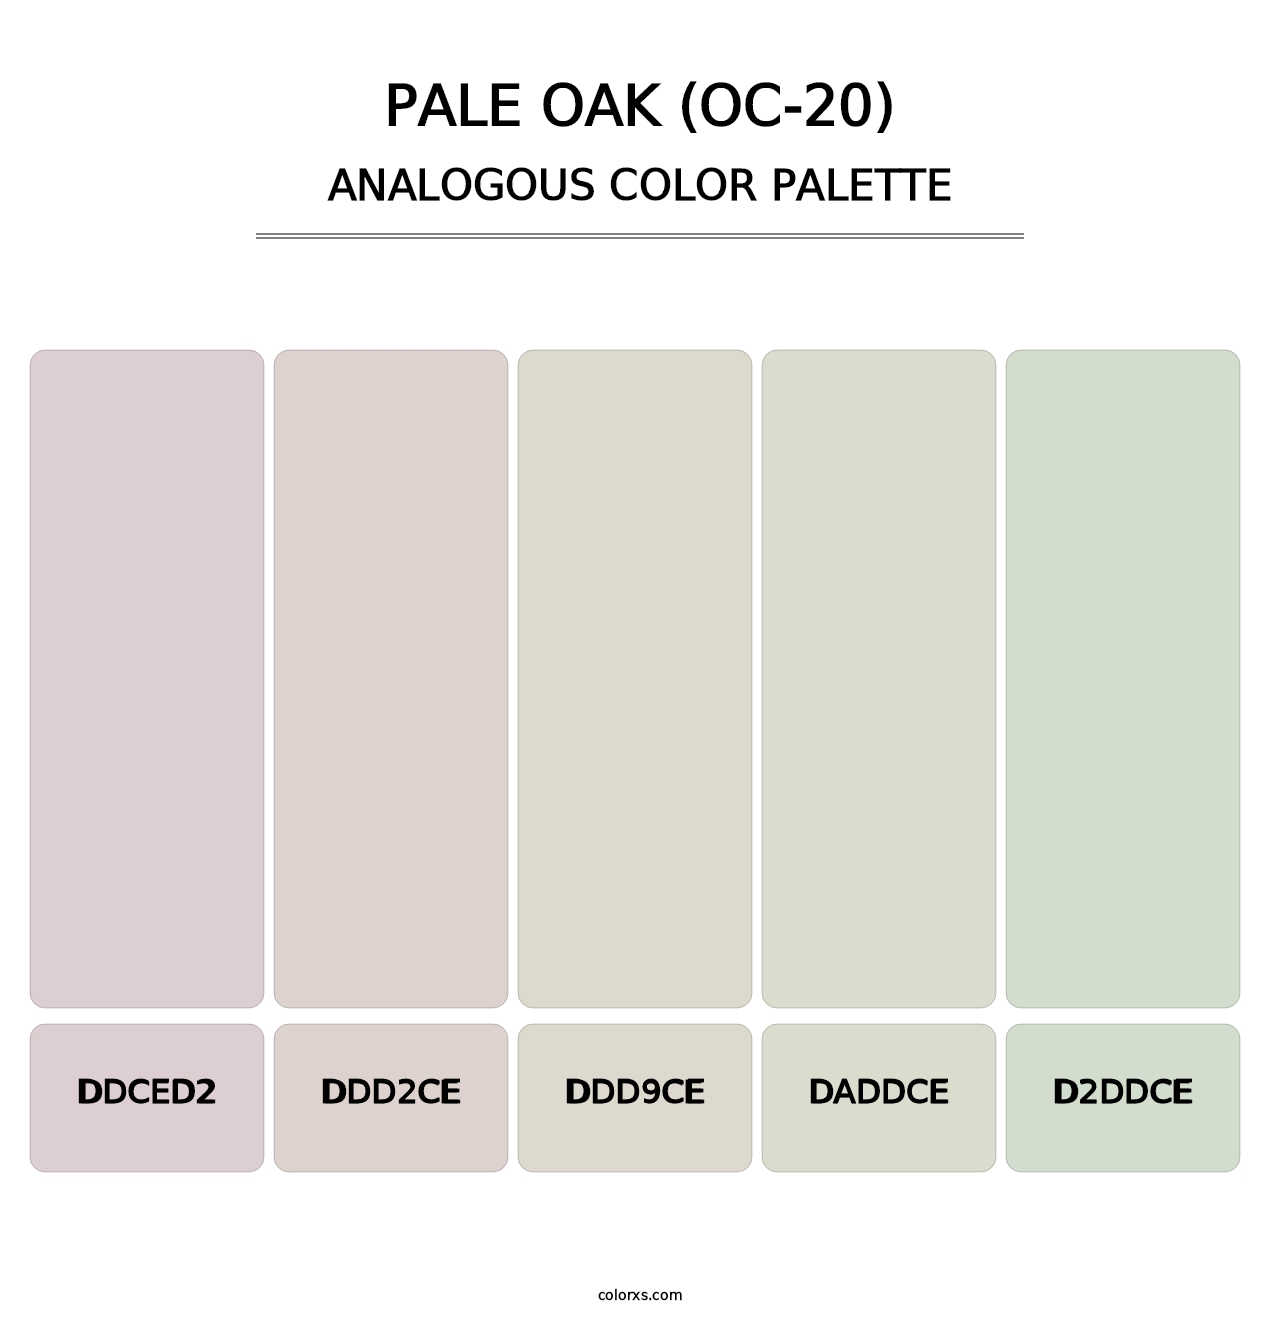 Pale Oak (OC-20) - Analogous Color Palette